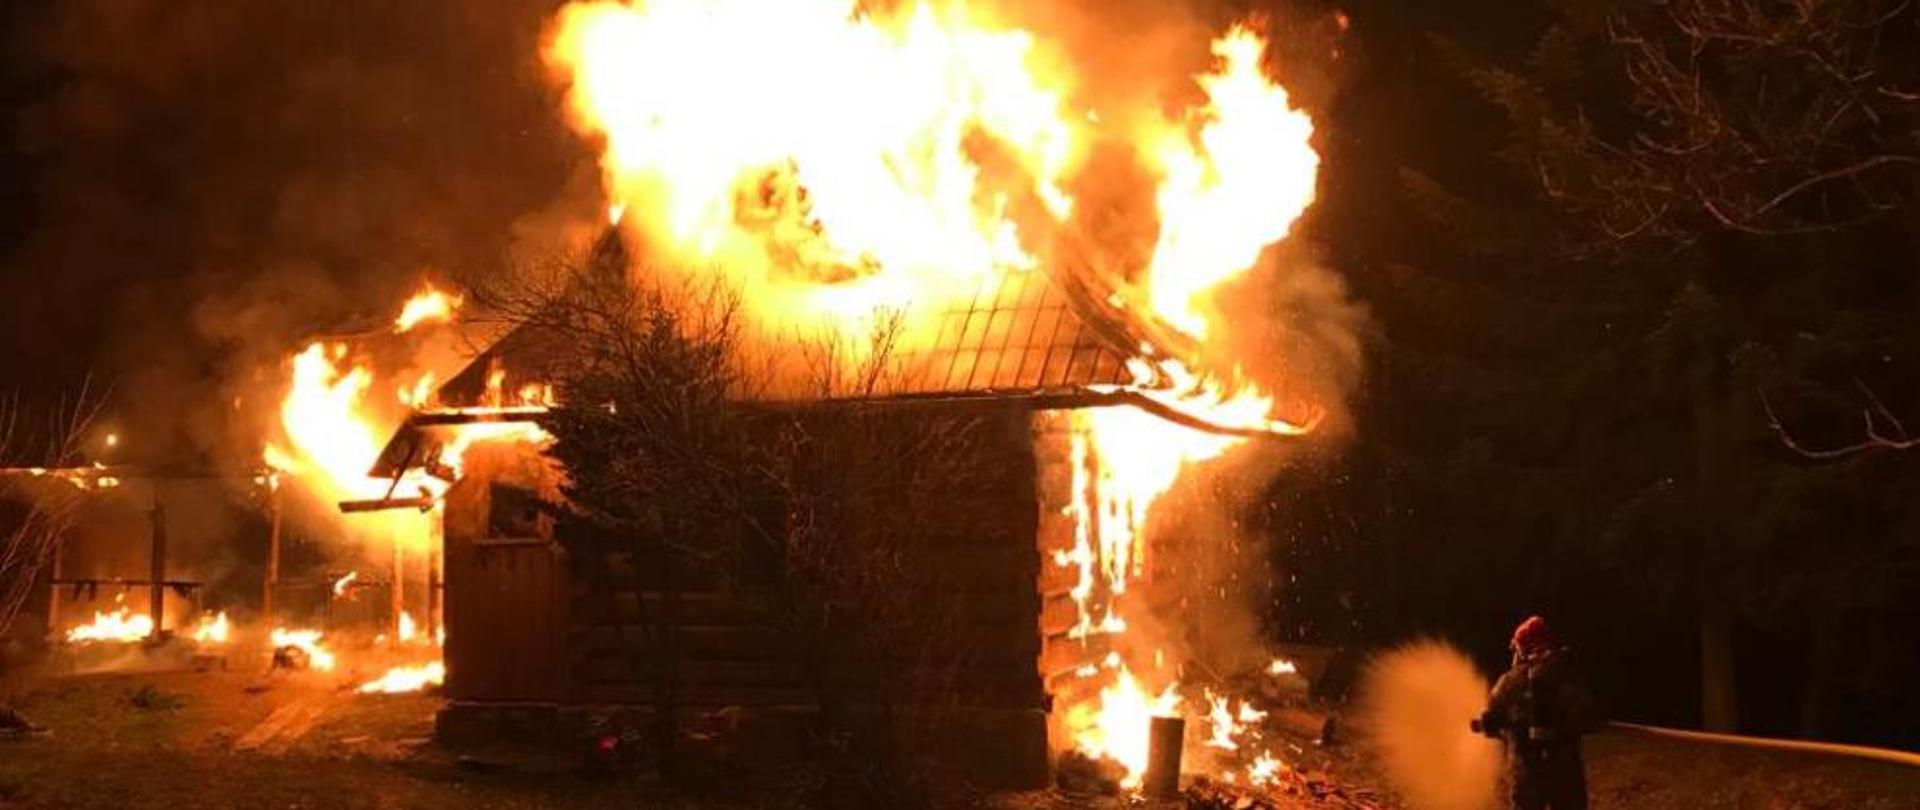 Zdjęcie przedstawia pożar budynku w Zakopanem na ul. Kotelnica. Na zdjęciu widać dom objęty w całości pożarem, po prawej stronie strażak przygotowujący się do gaszenia pożaru. Tło ciemne z uwagi na wieczorową porę zdarzenia.